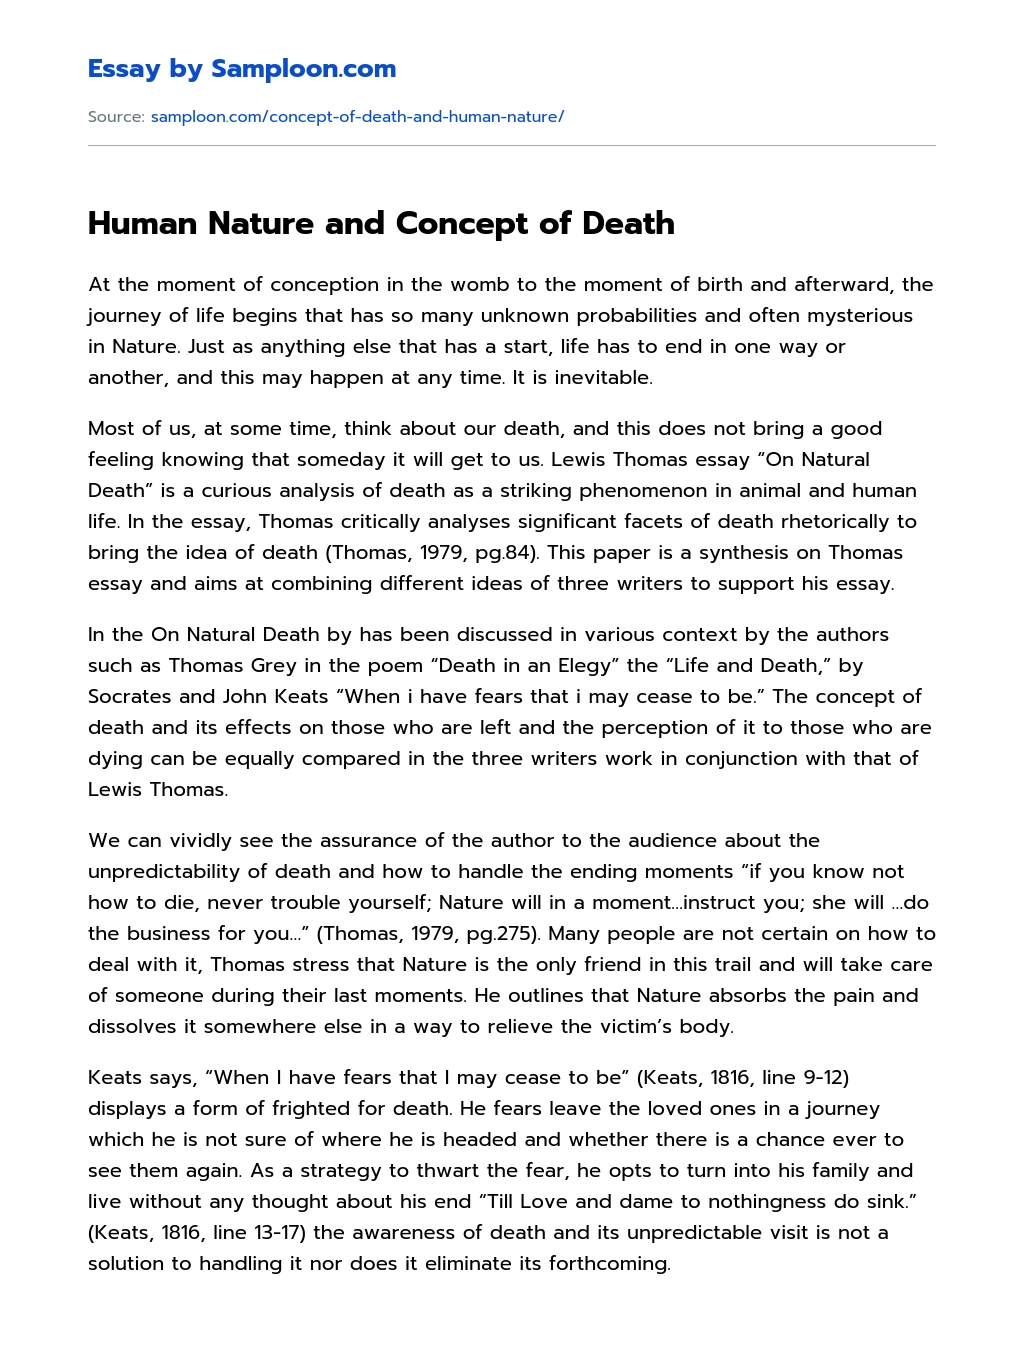 human nature essay